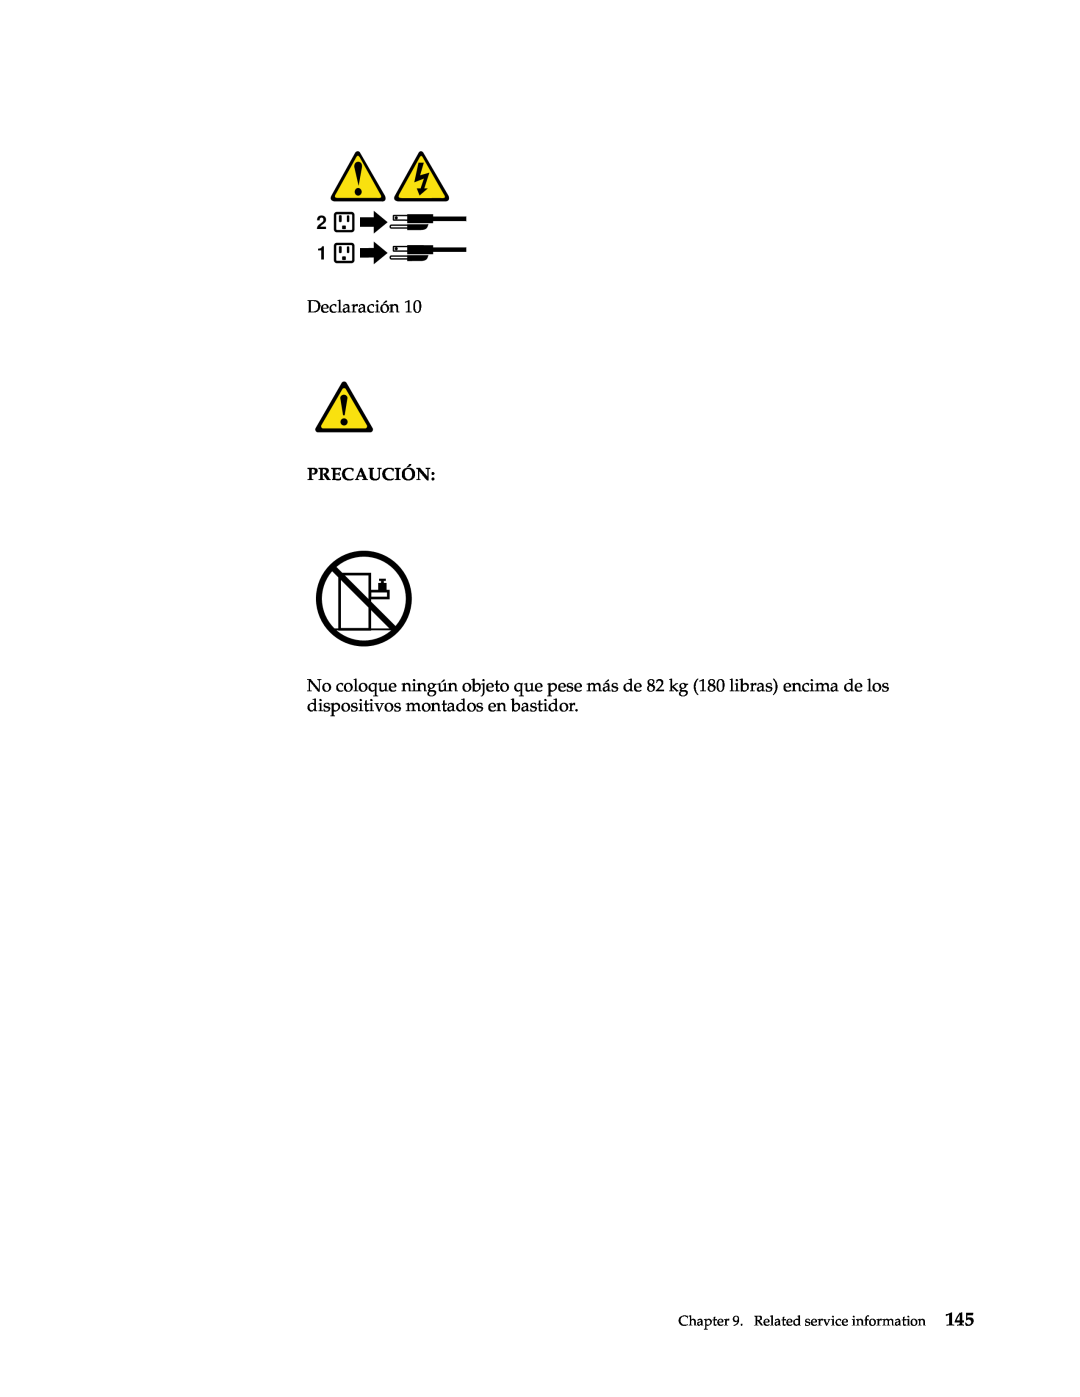 IBM xSeries 330 manual Declaración, Precaución, Related service information 